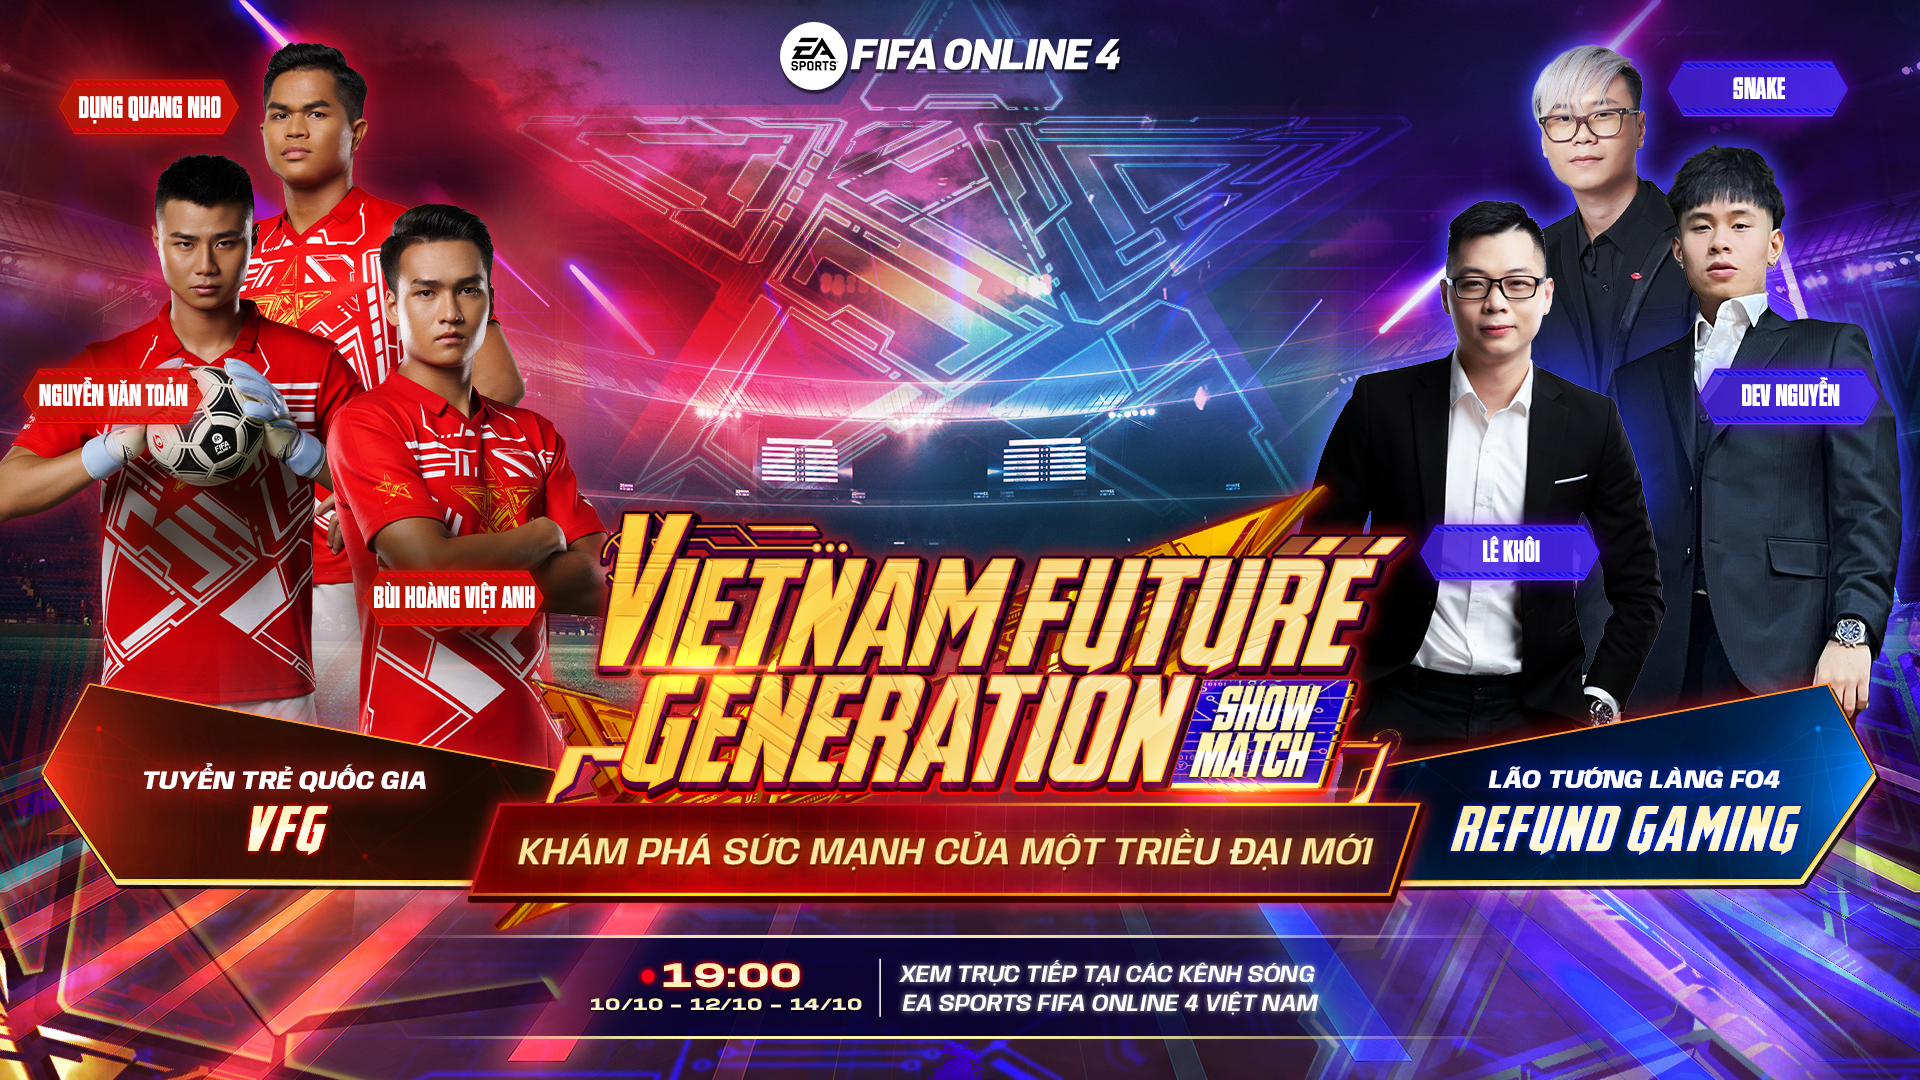 Refund Gaming tranh tài cùng U23 Việt Nam tại FIFA Online 4 VFG Showmatch 2022 - ảnh 1